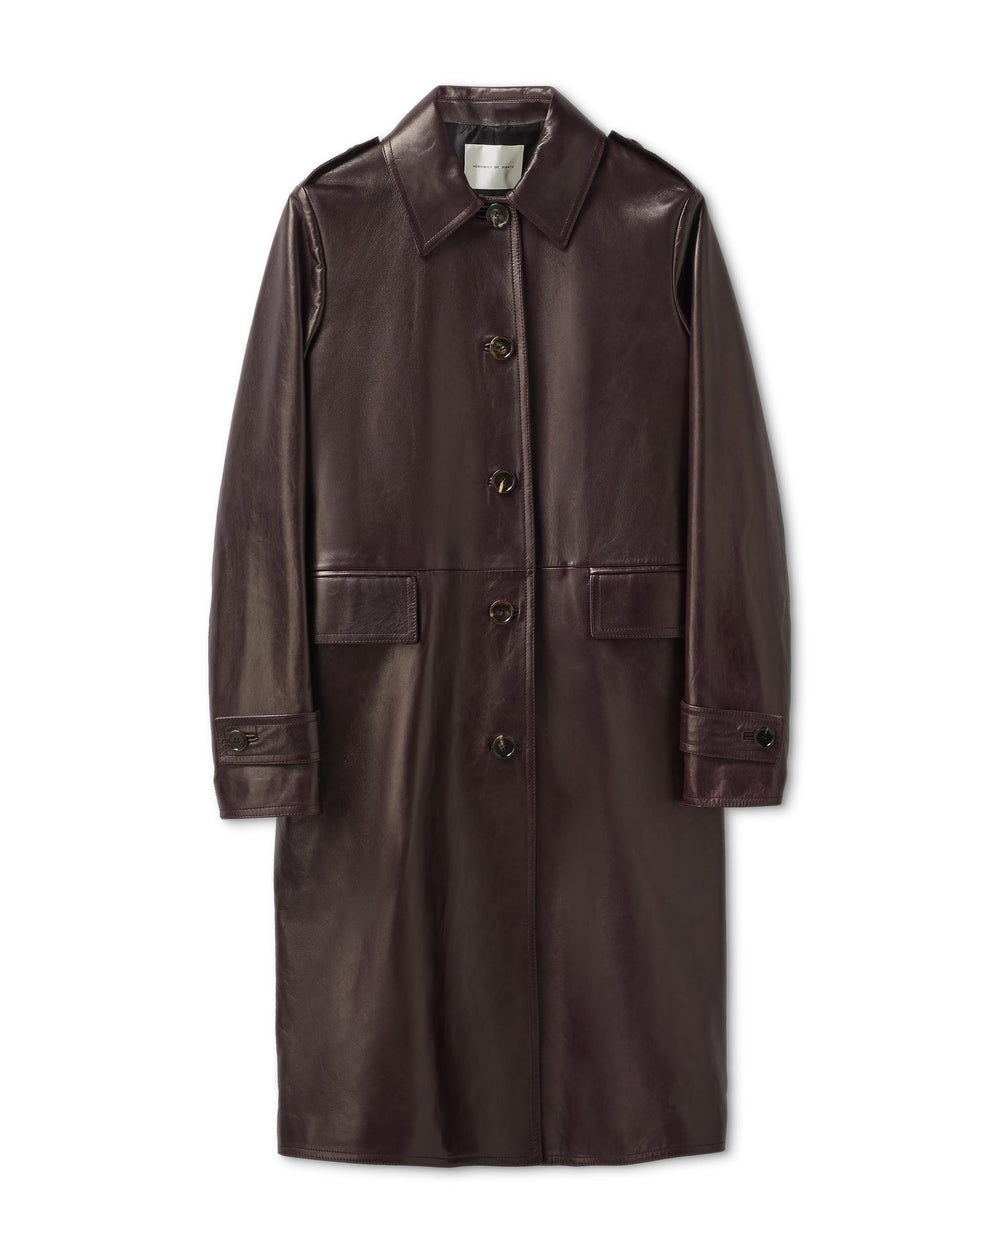 June Coat in Leather, Plum